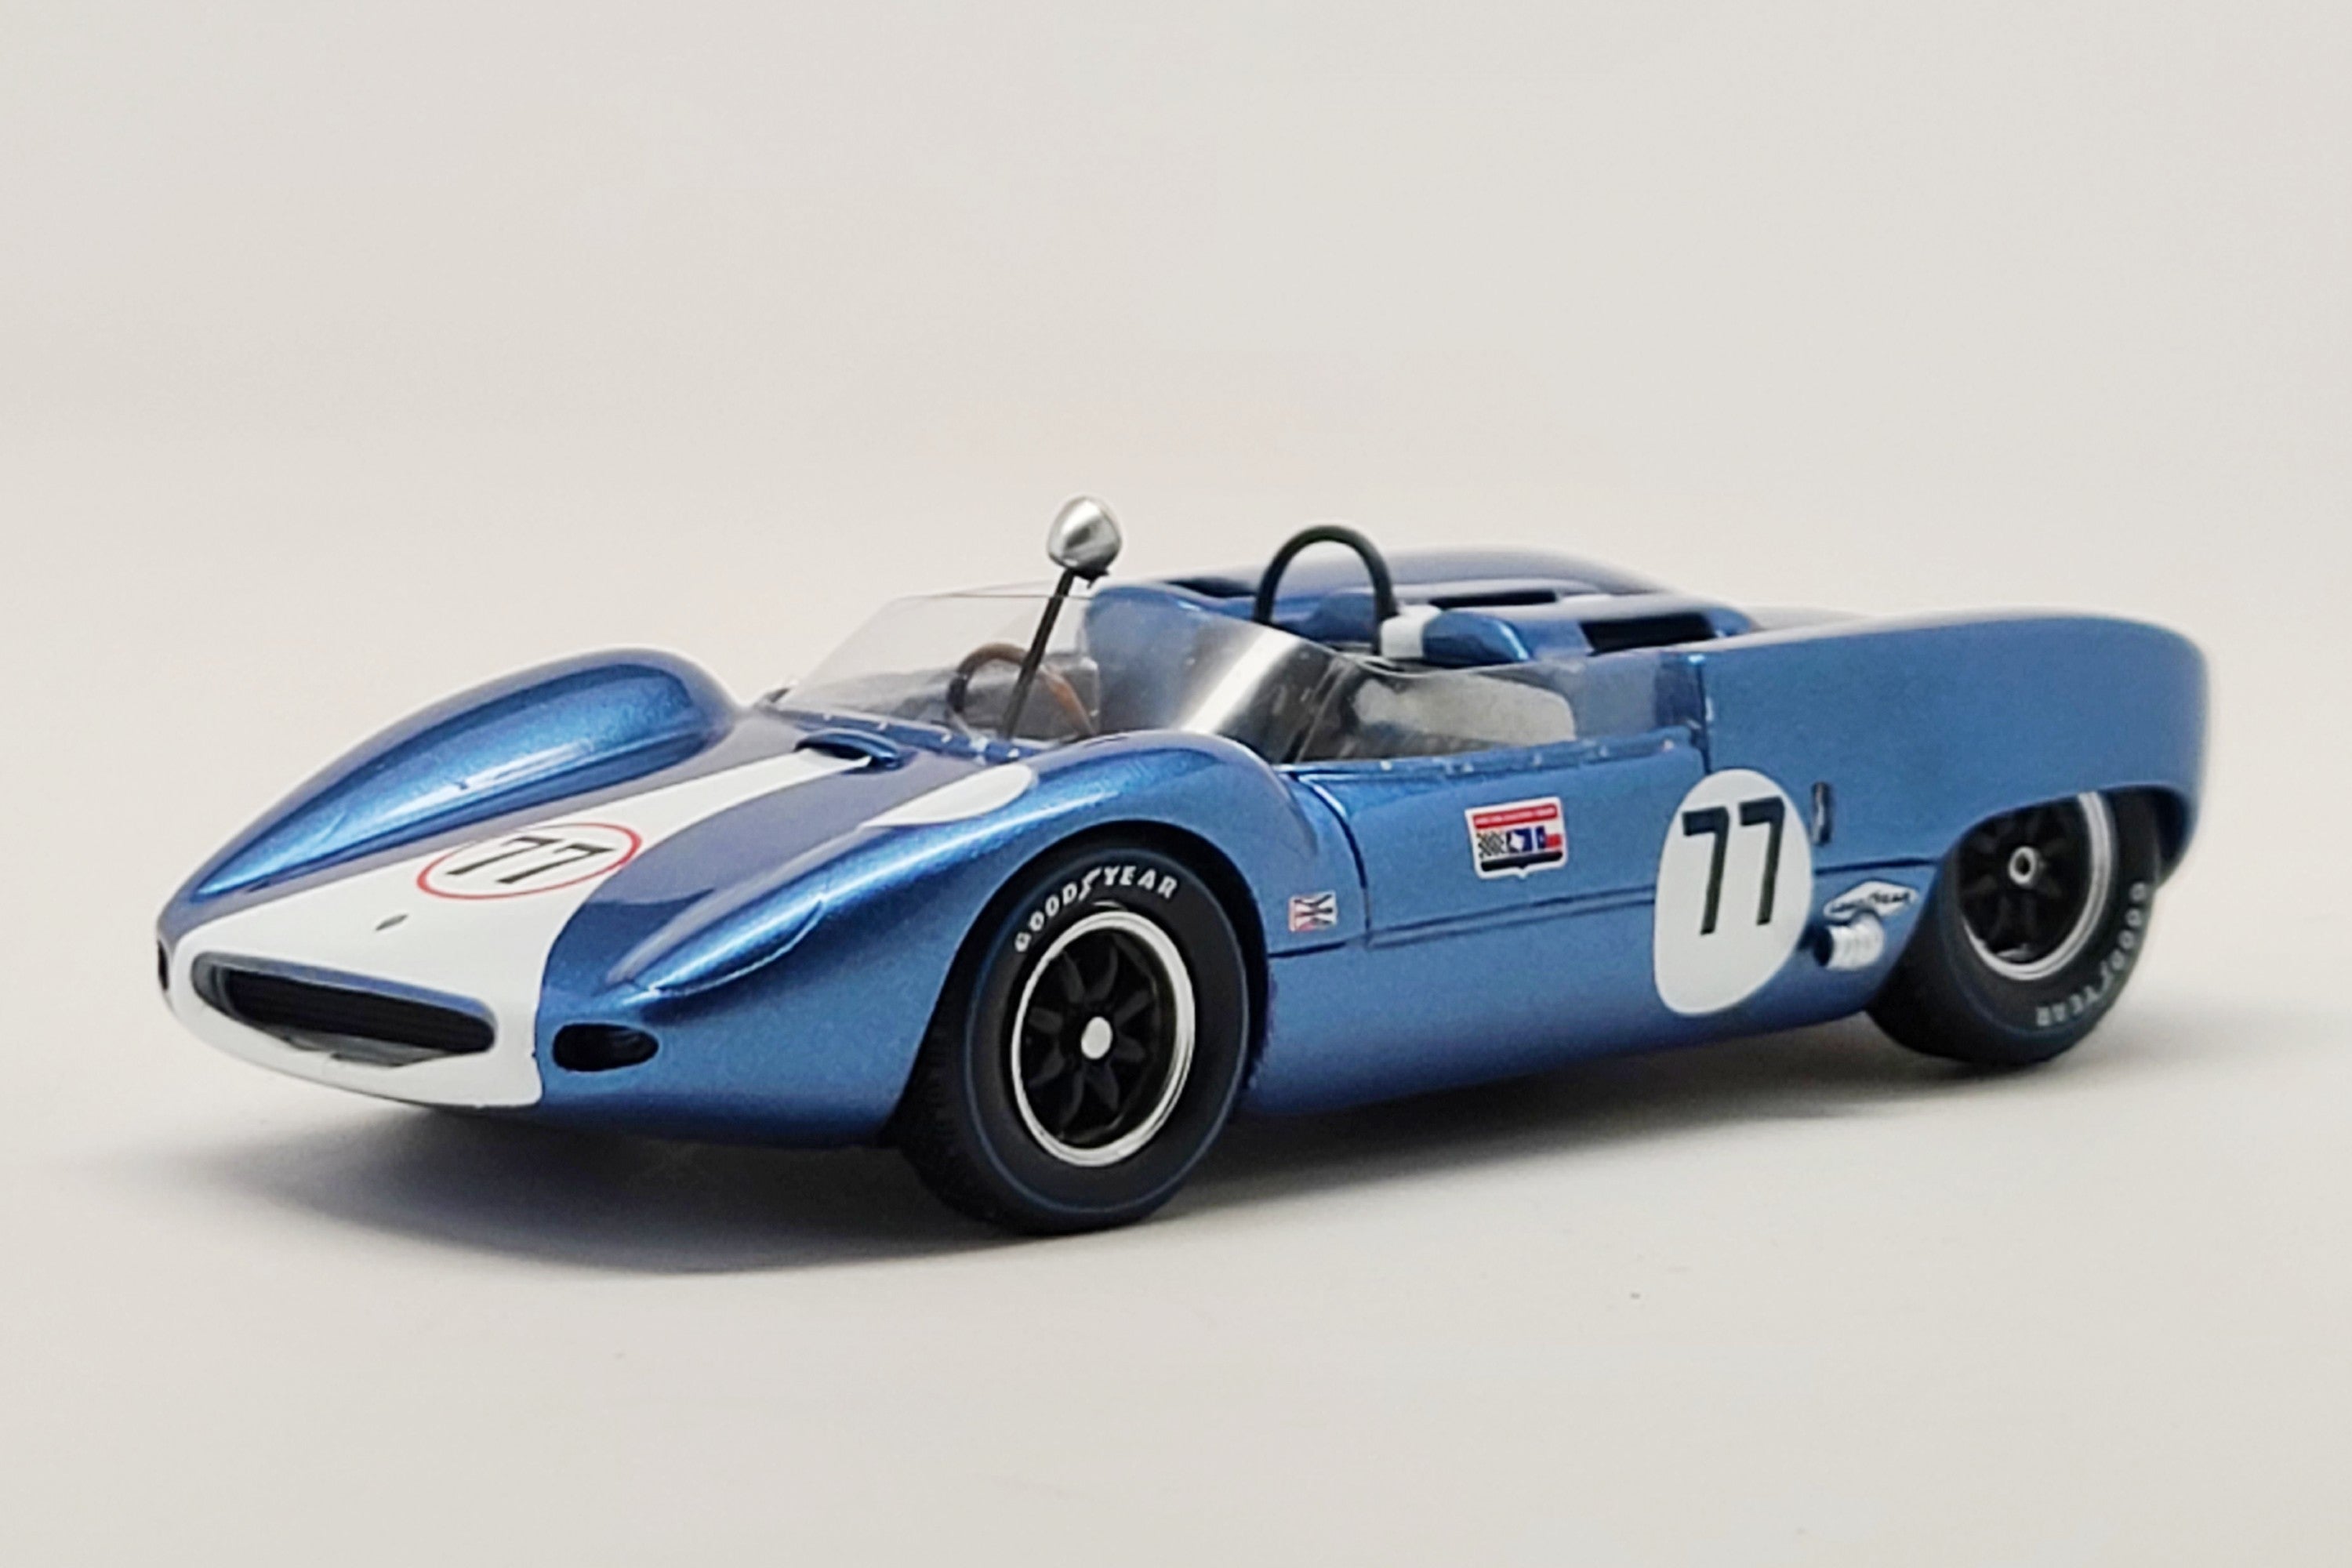 Scarab Mark IV (1963 Nassau Trophy Race) | 1:43 Scale Model Car by Spark | Front Quarter